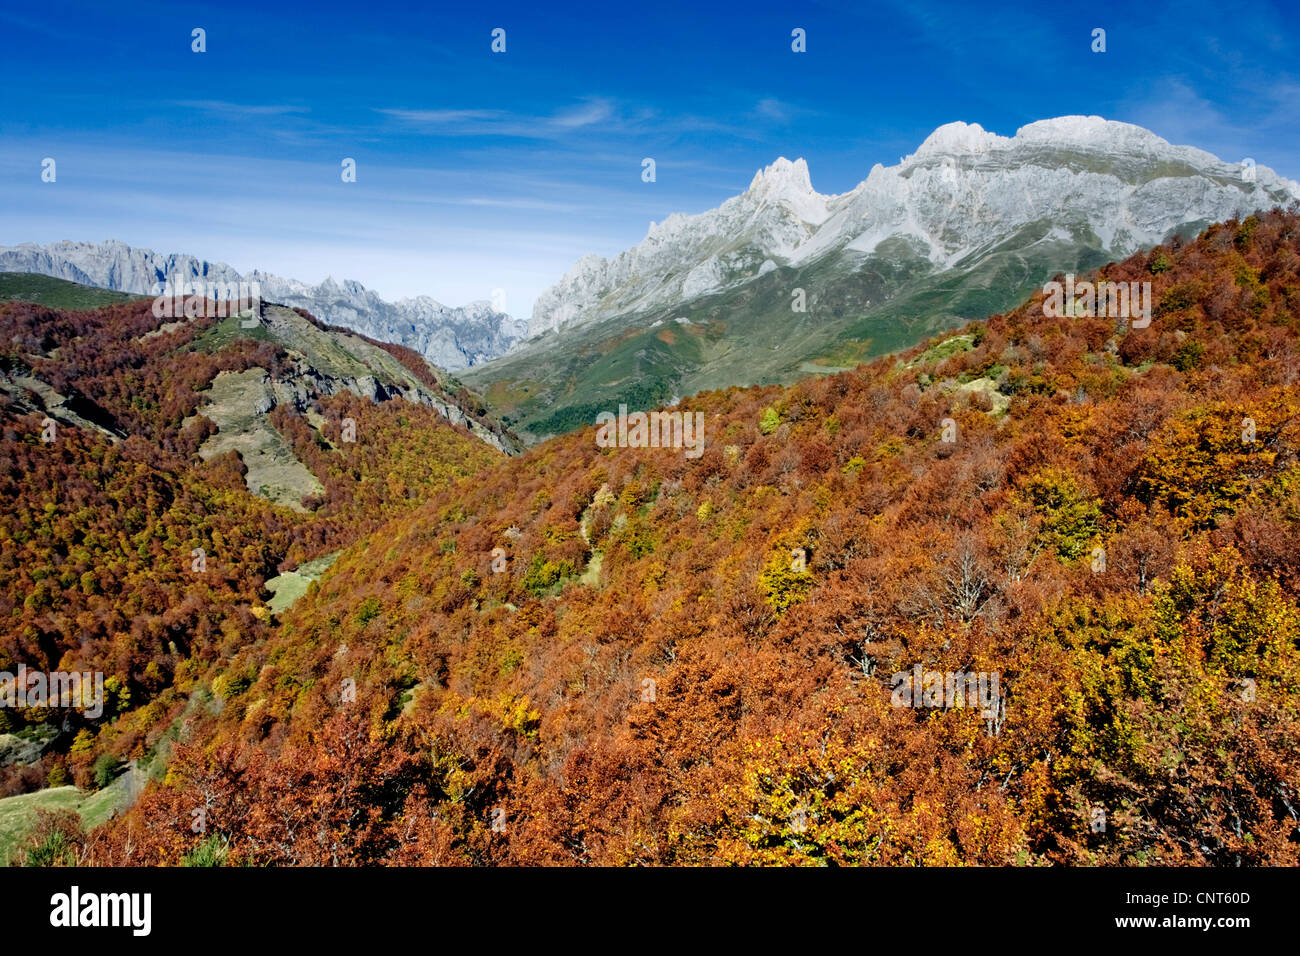 Le hêtre commun (Fagus sylvatica), forêt de hêtres en automne, dans les monts Cantabriques, en Espagne, Leon, parc national Picos de Europa Banque D'Images